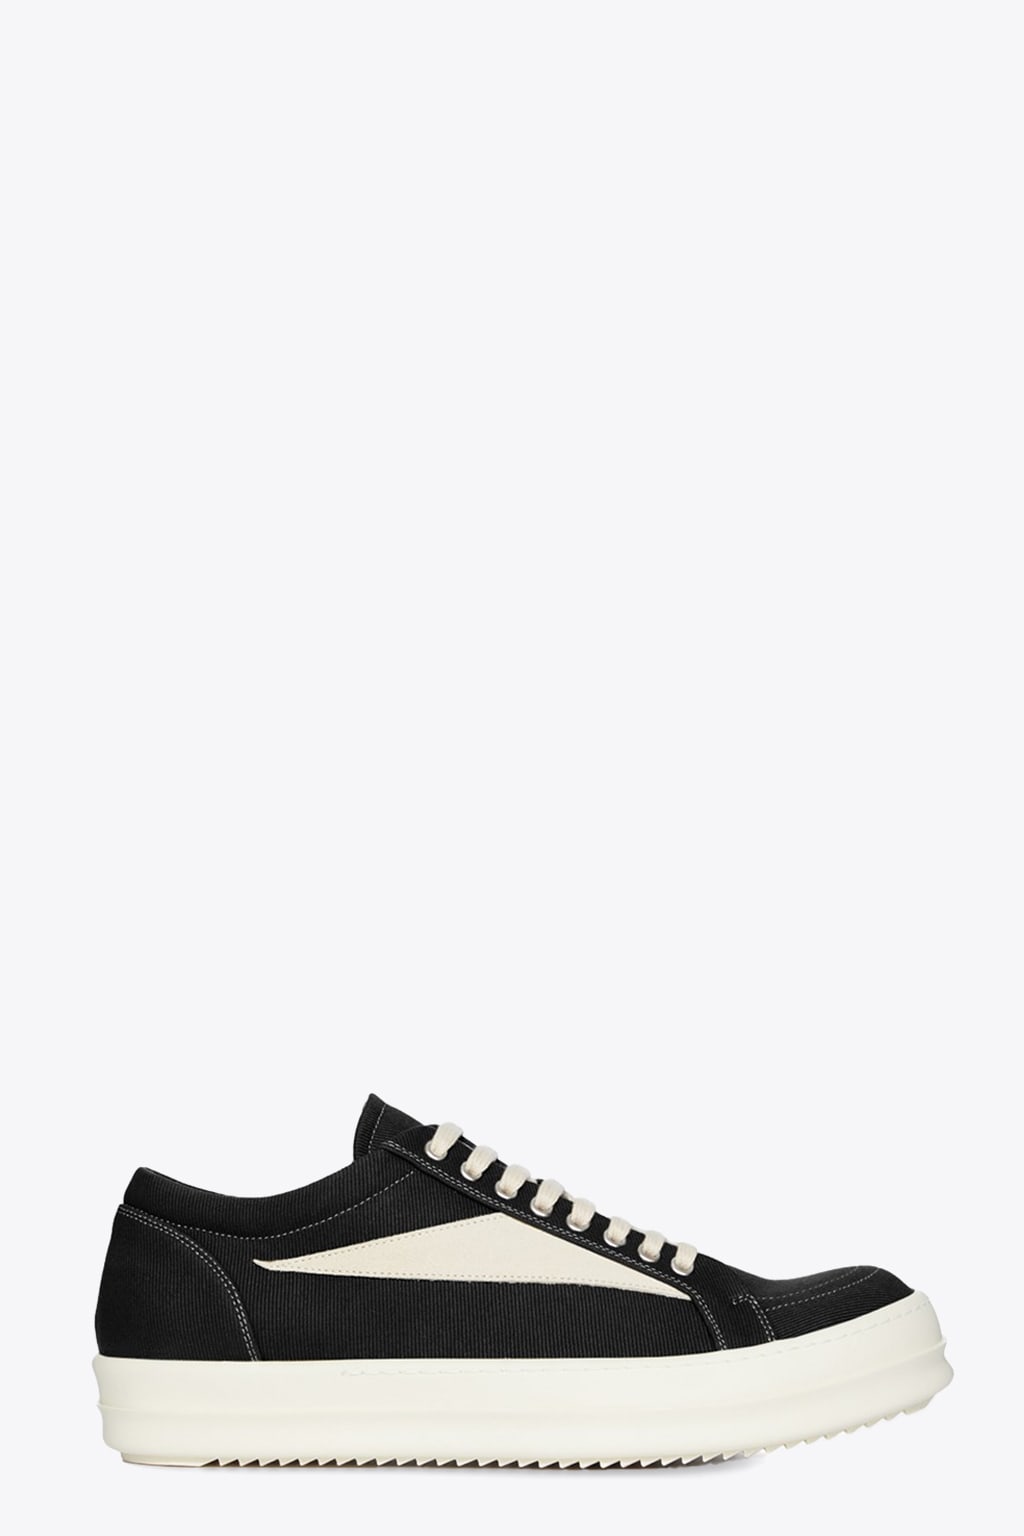 Drkshdw Vintage Sneaks Black Canvas Low Sneaker With Side Insert - Vintage Sneaks In Nero/bianco